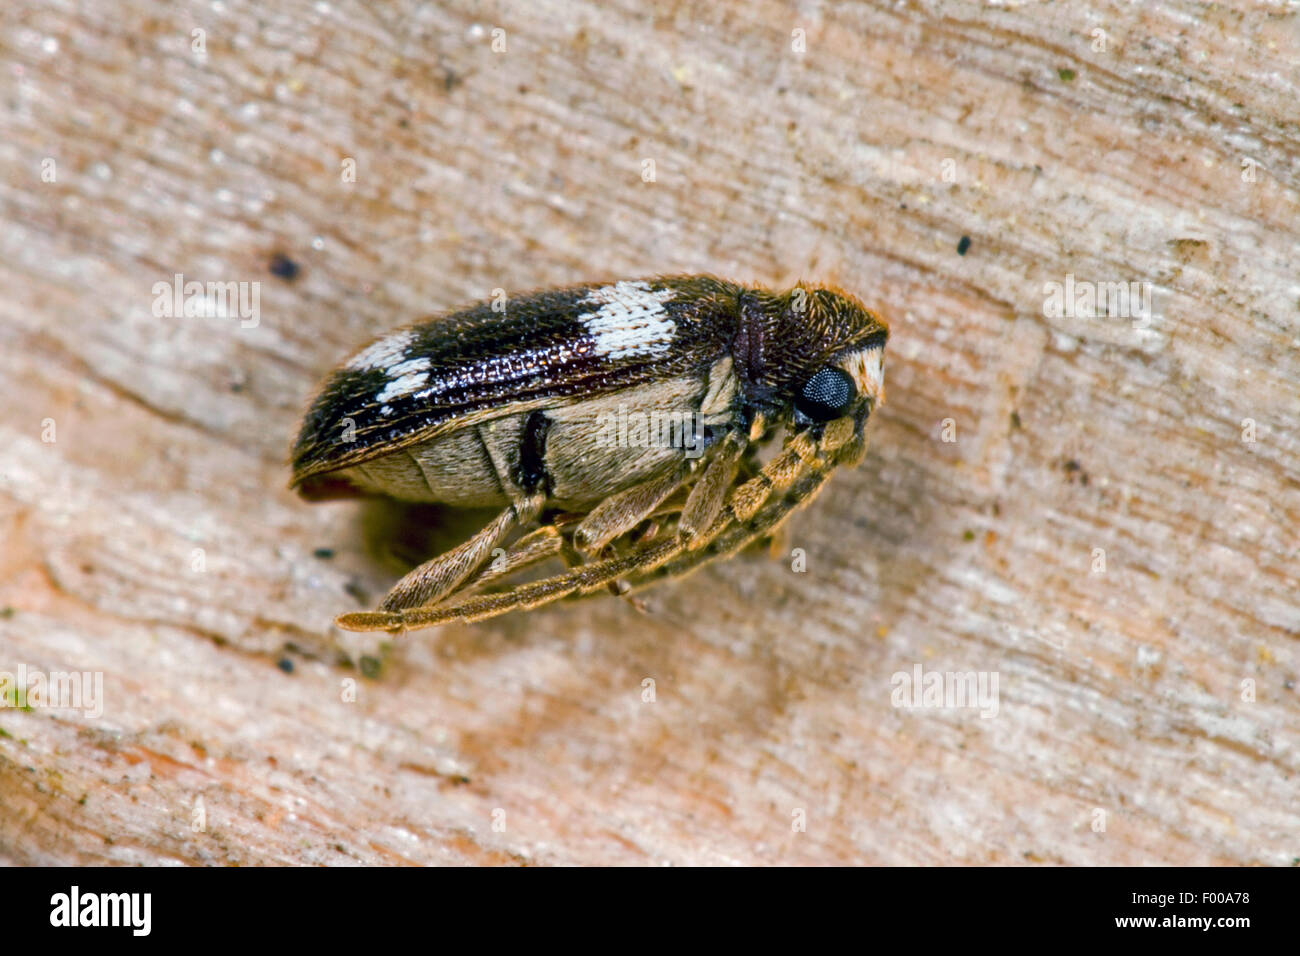 Spider beetle (Ptinus sexpunctatus), on wood, Germany Stock Photo